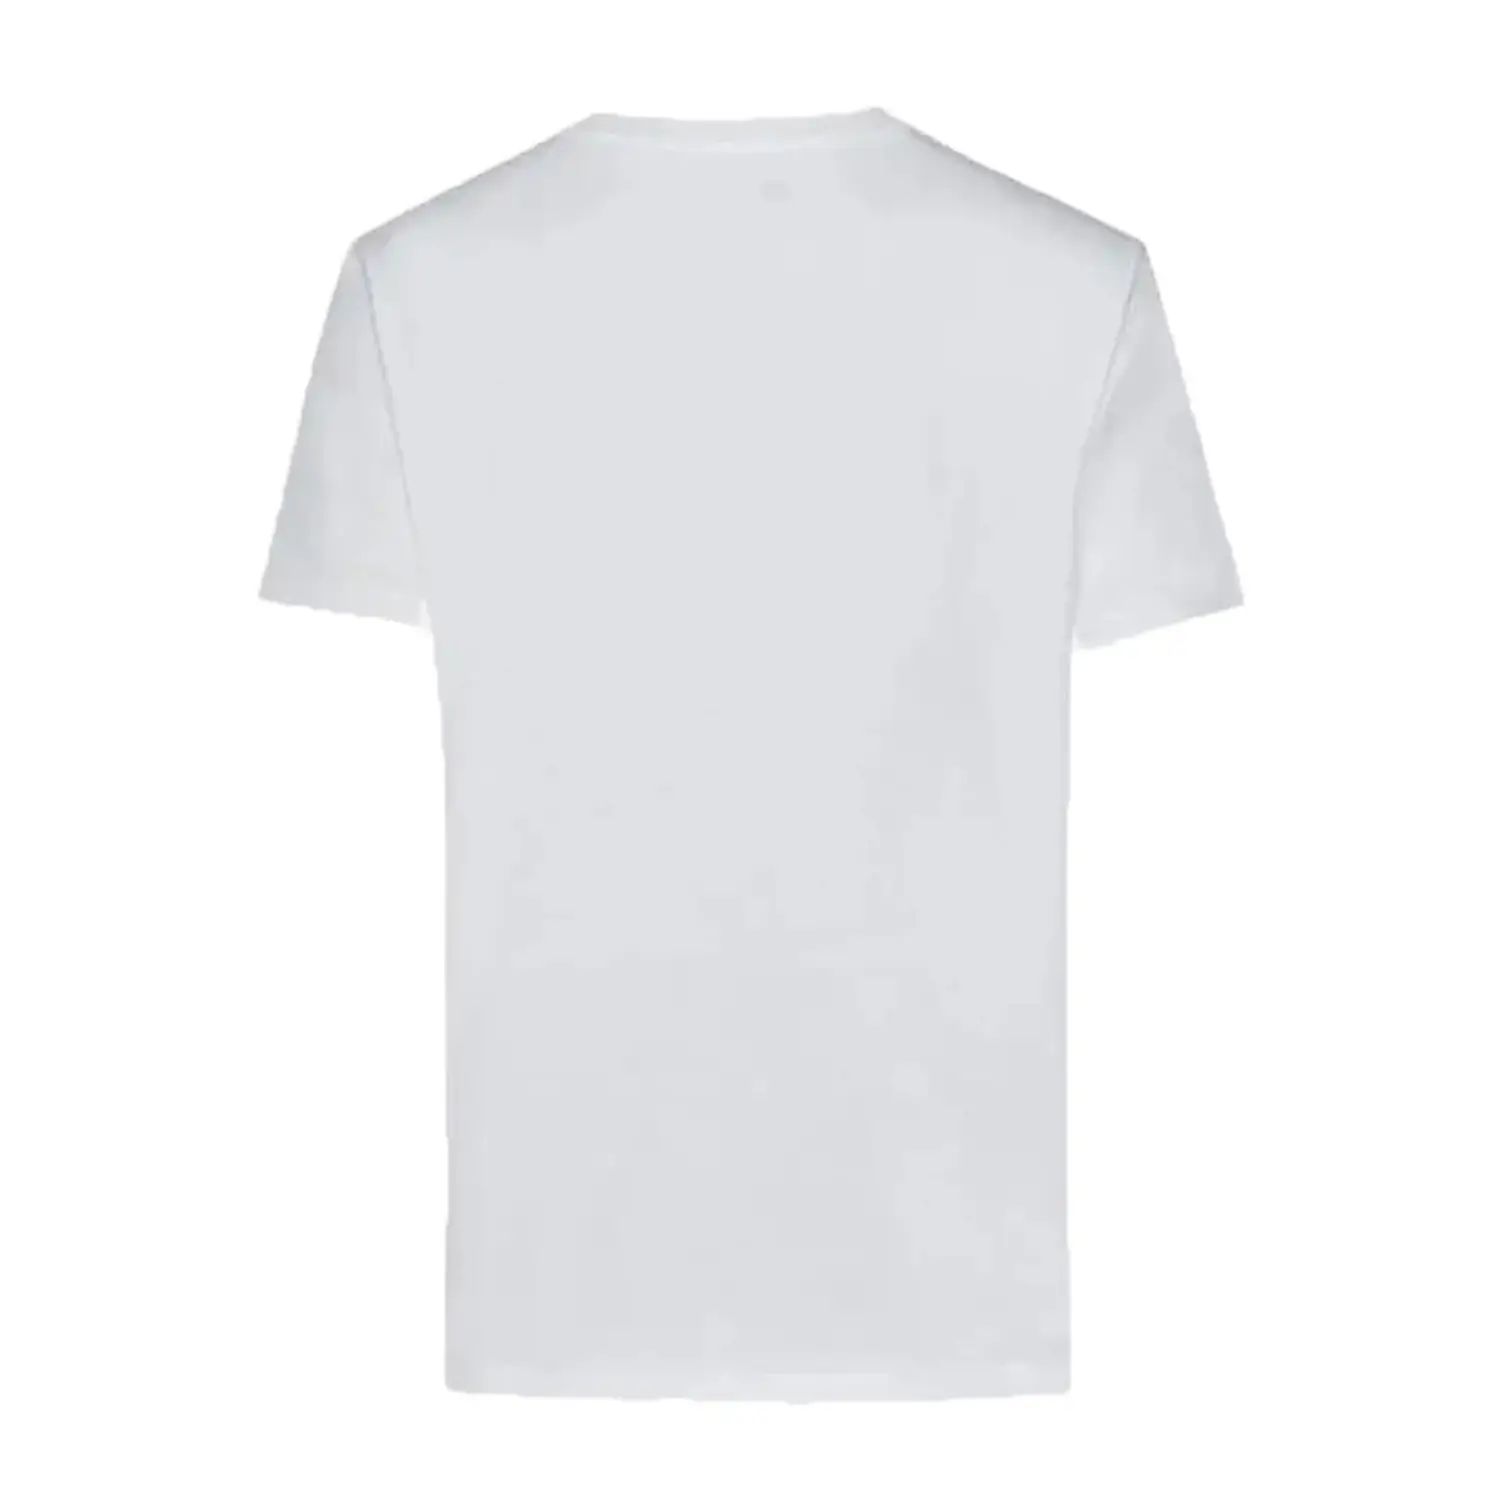 New Balance Lifestyle Beyaz Erkek Tişört - MNT1111-WT